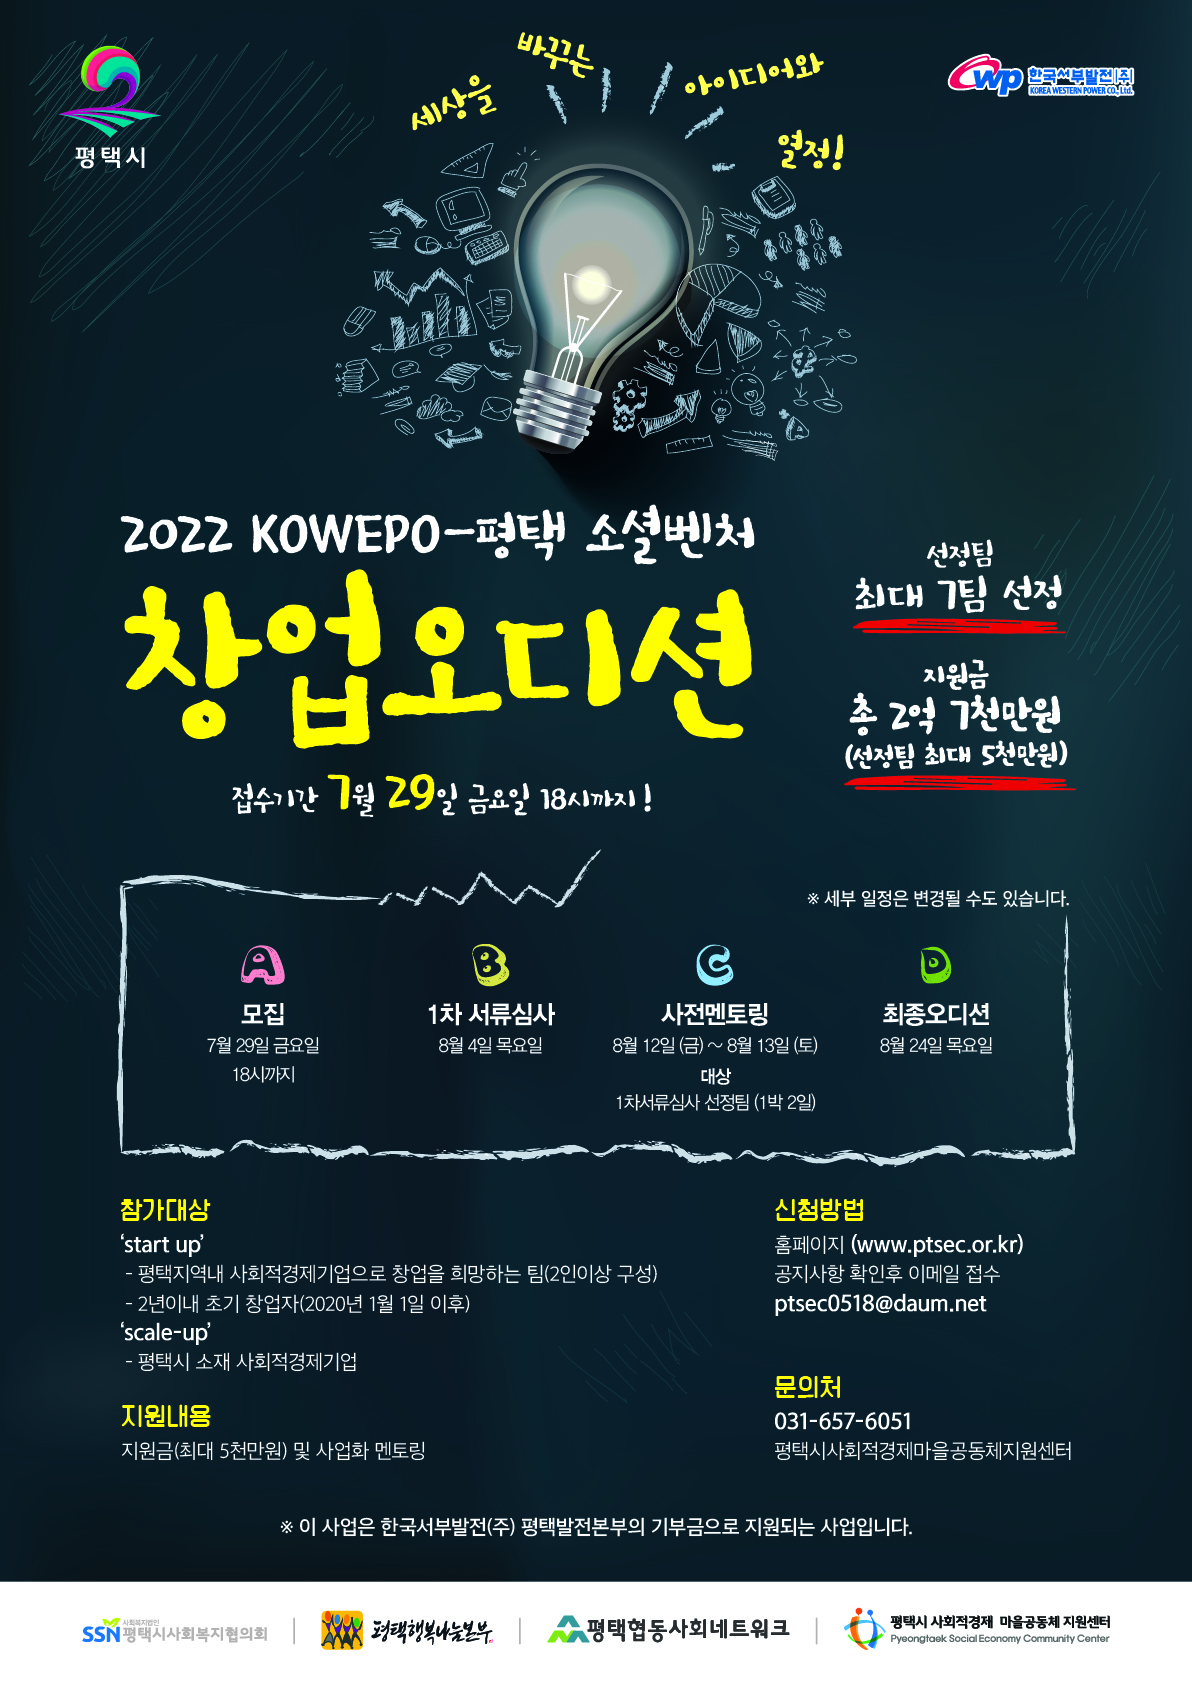 22년 KOWEPO-평택 소셜벤처 창업오디션 모집 (재)공고(~7/29까지)